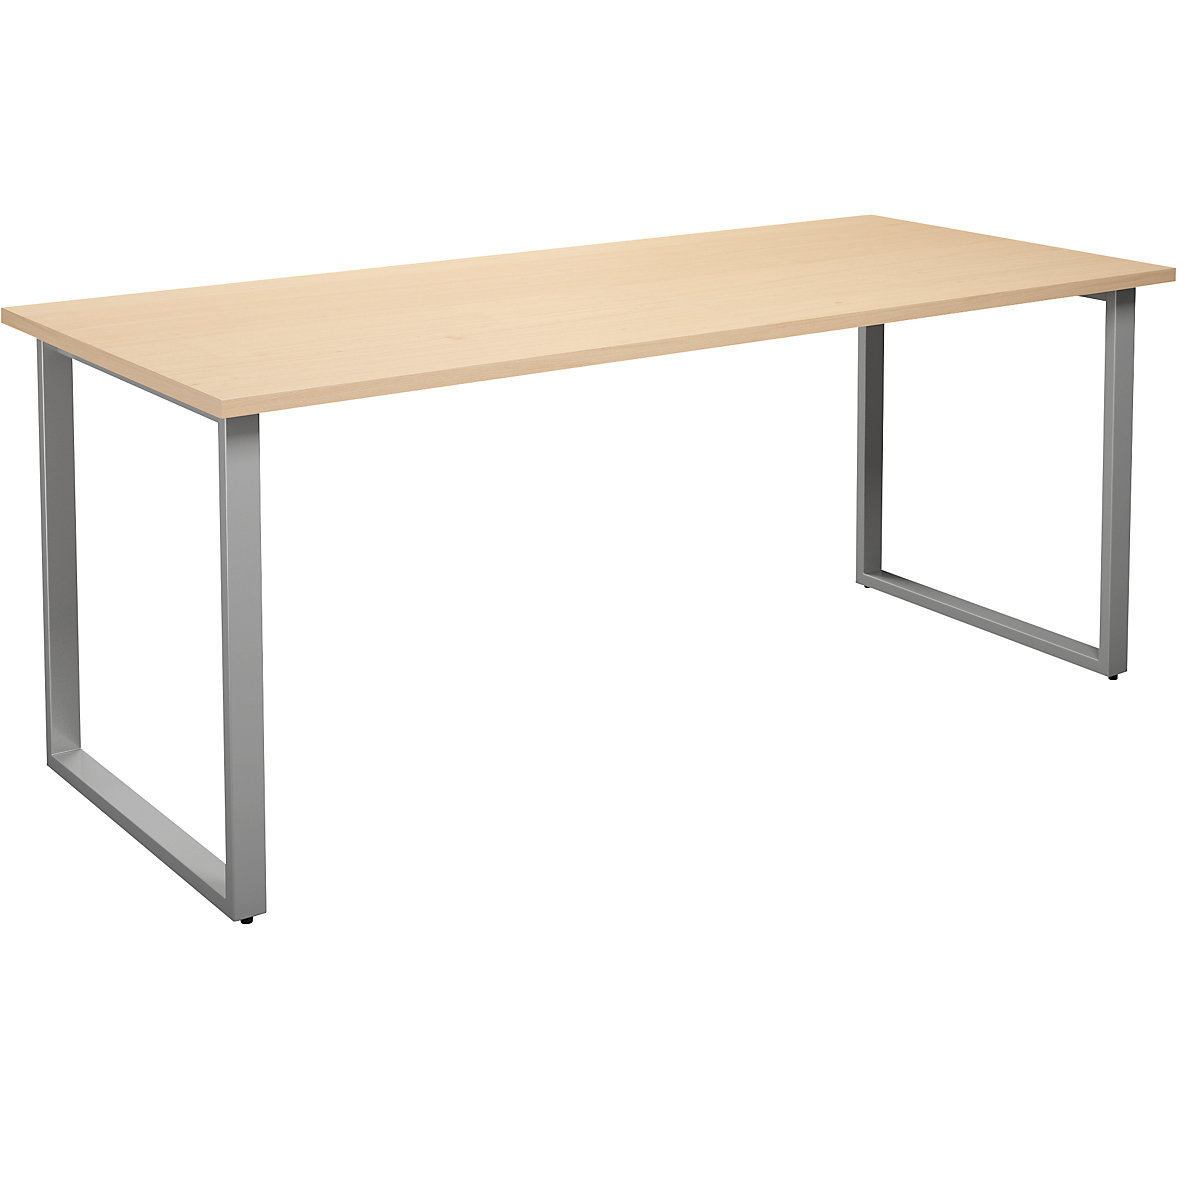 DUO-O multi-purpose desk, straight tabletop